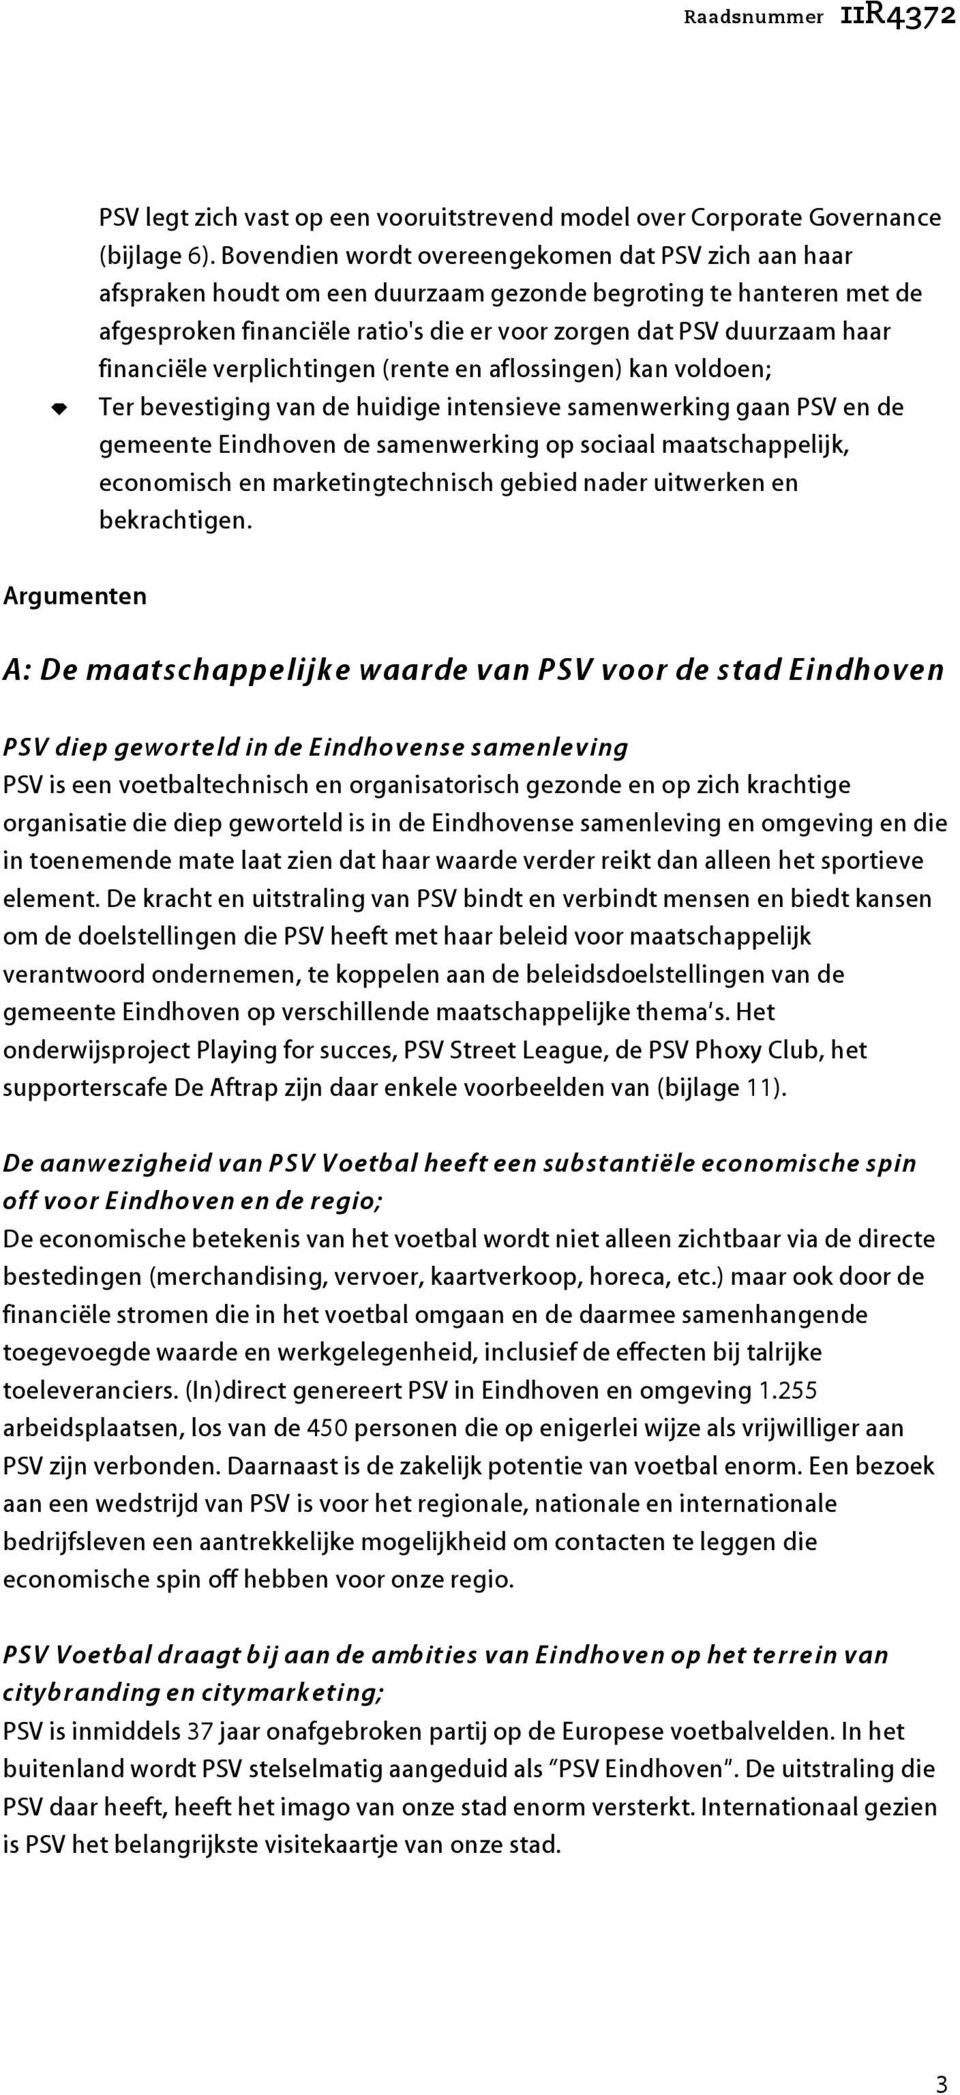 financiële verplichtingen (rente en aflossingen) kan voldoen; Ter evestiging van de huidige intensieve samenwerking gaan PSV en de gemeente Eindhoven de samenwerking op sociaal maatschappelijk,